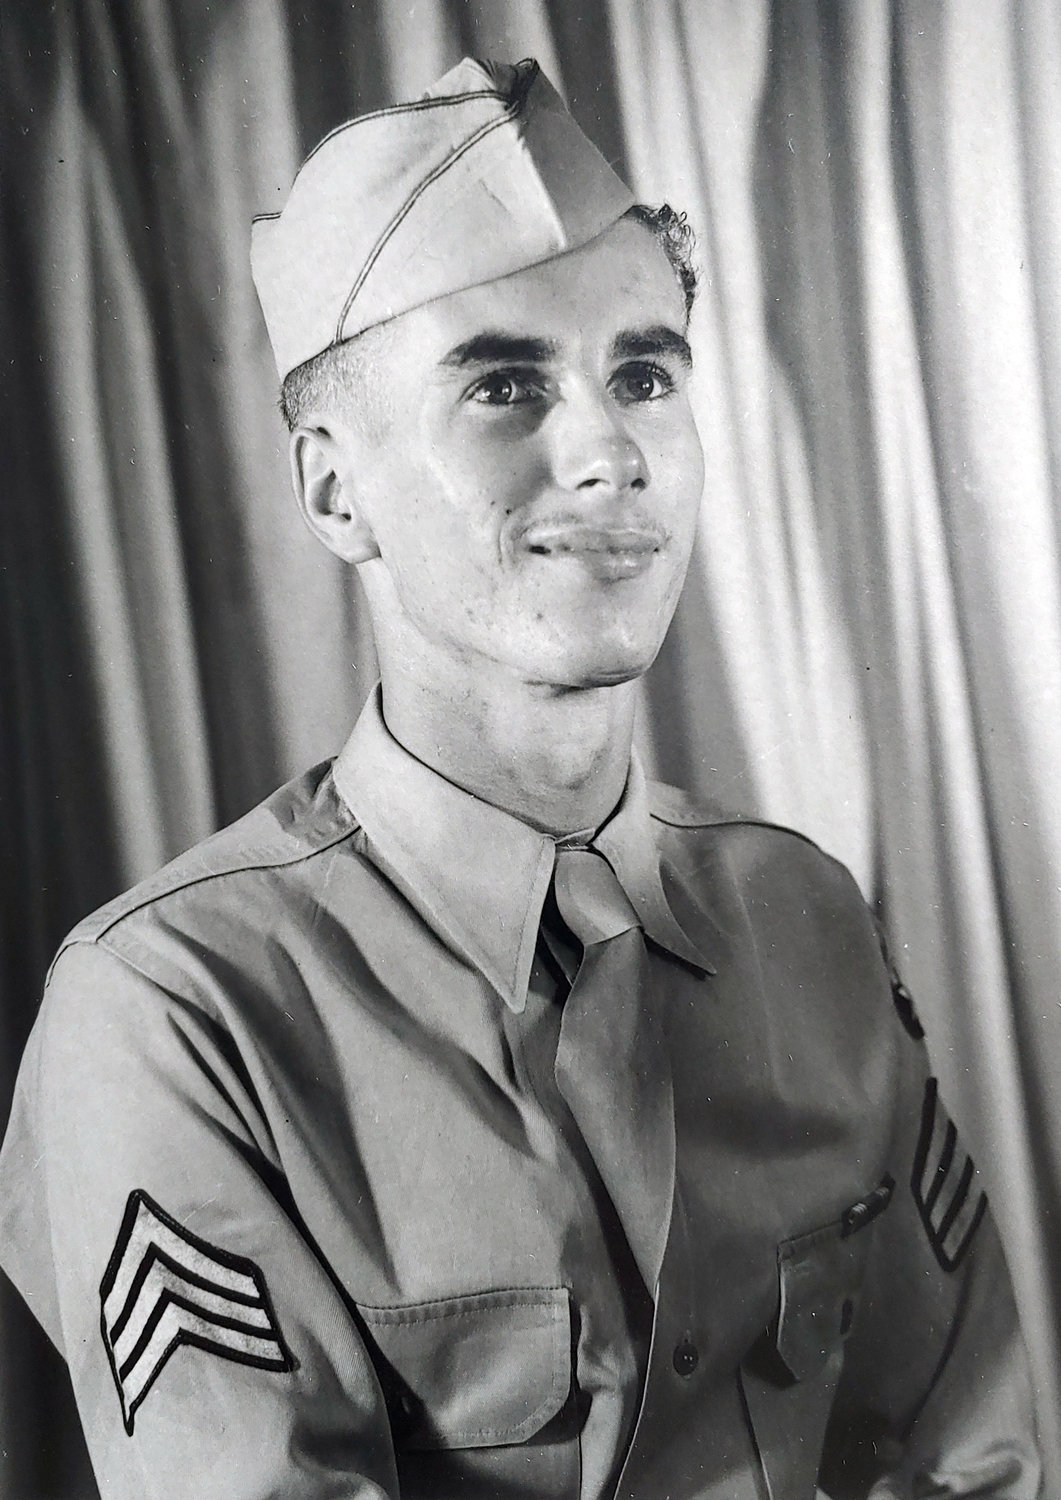 George Blomdahl in US Air Corps